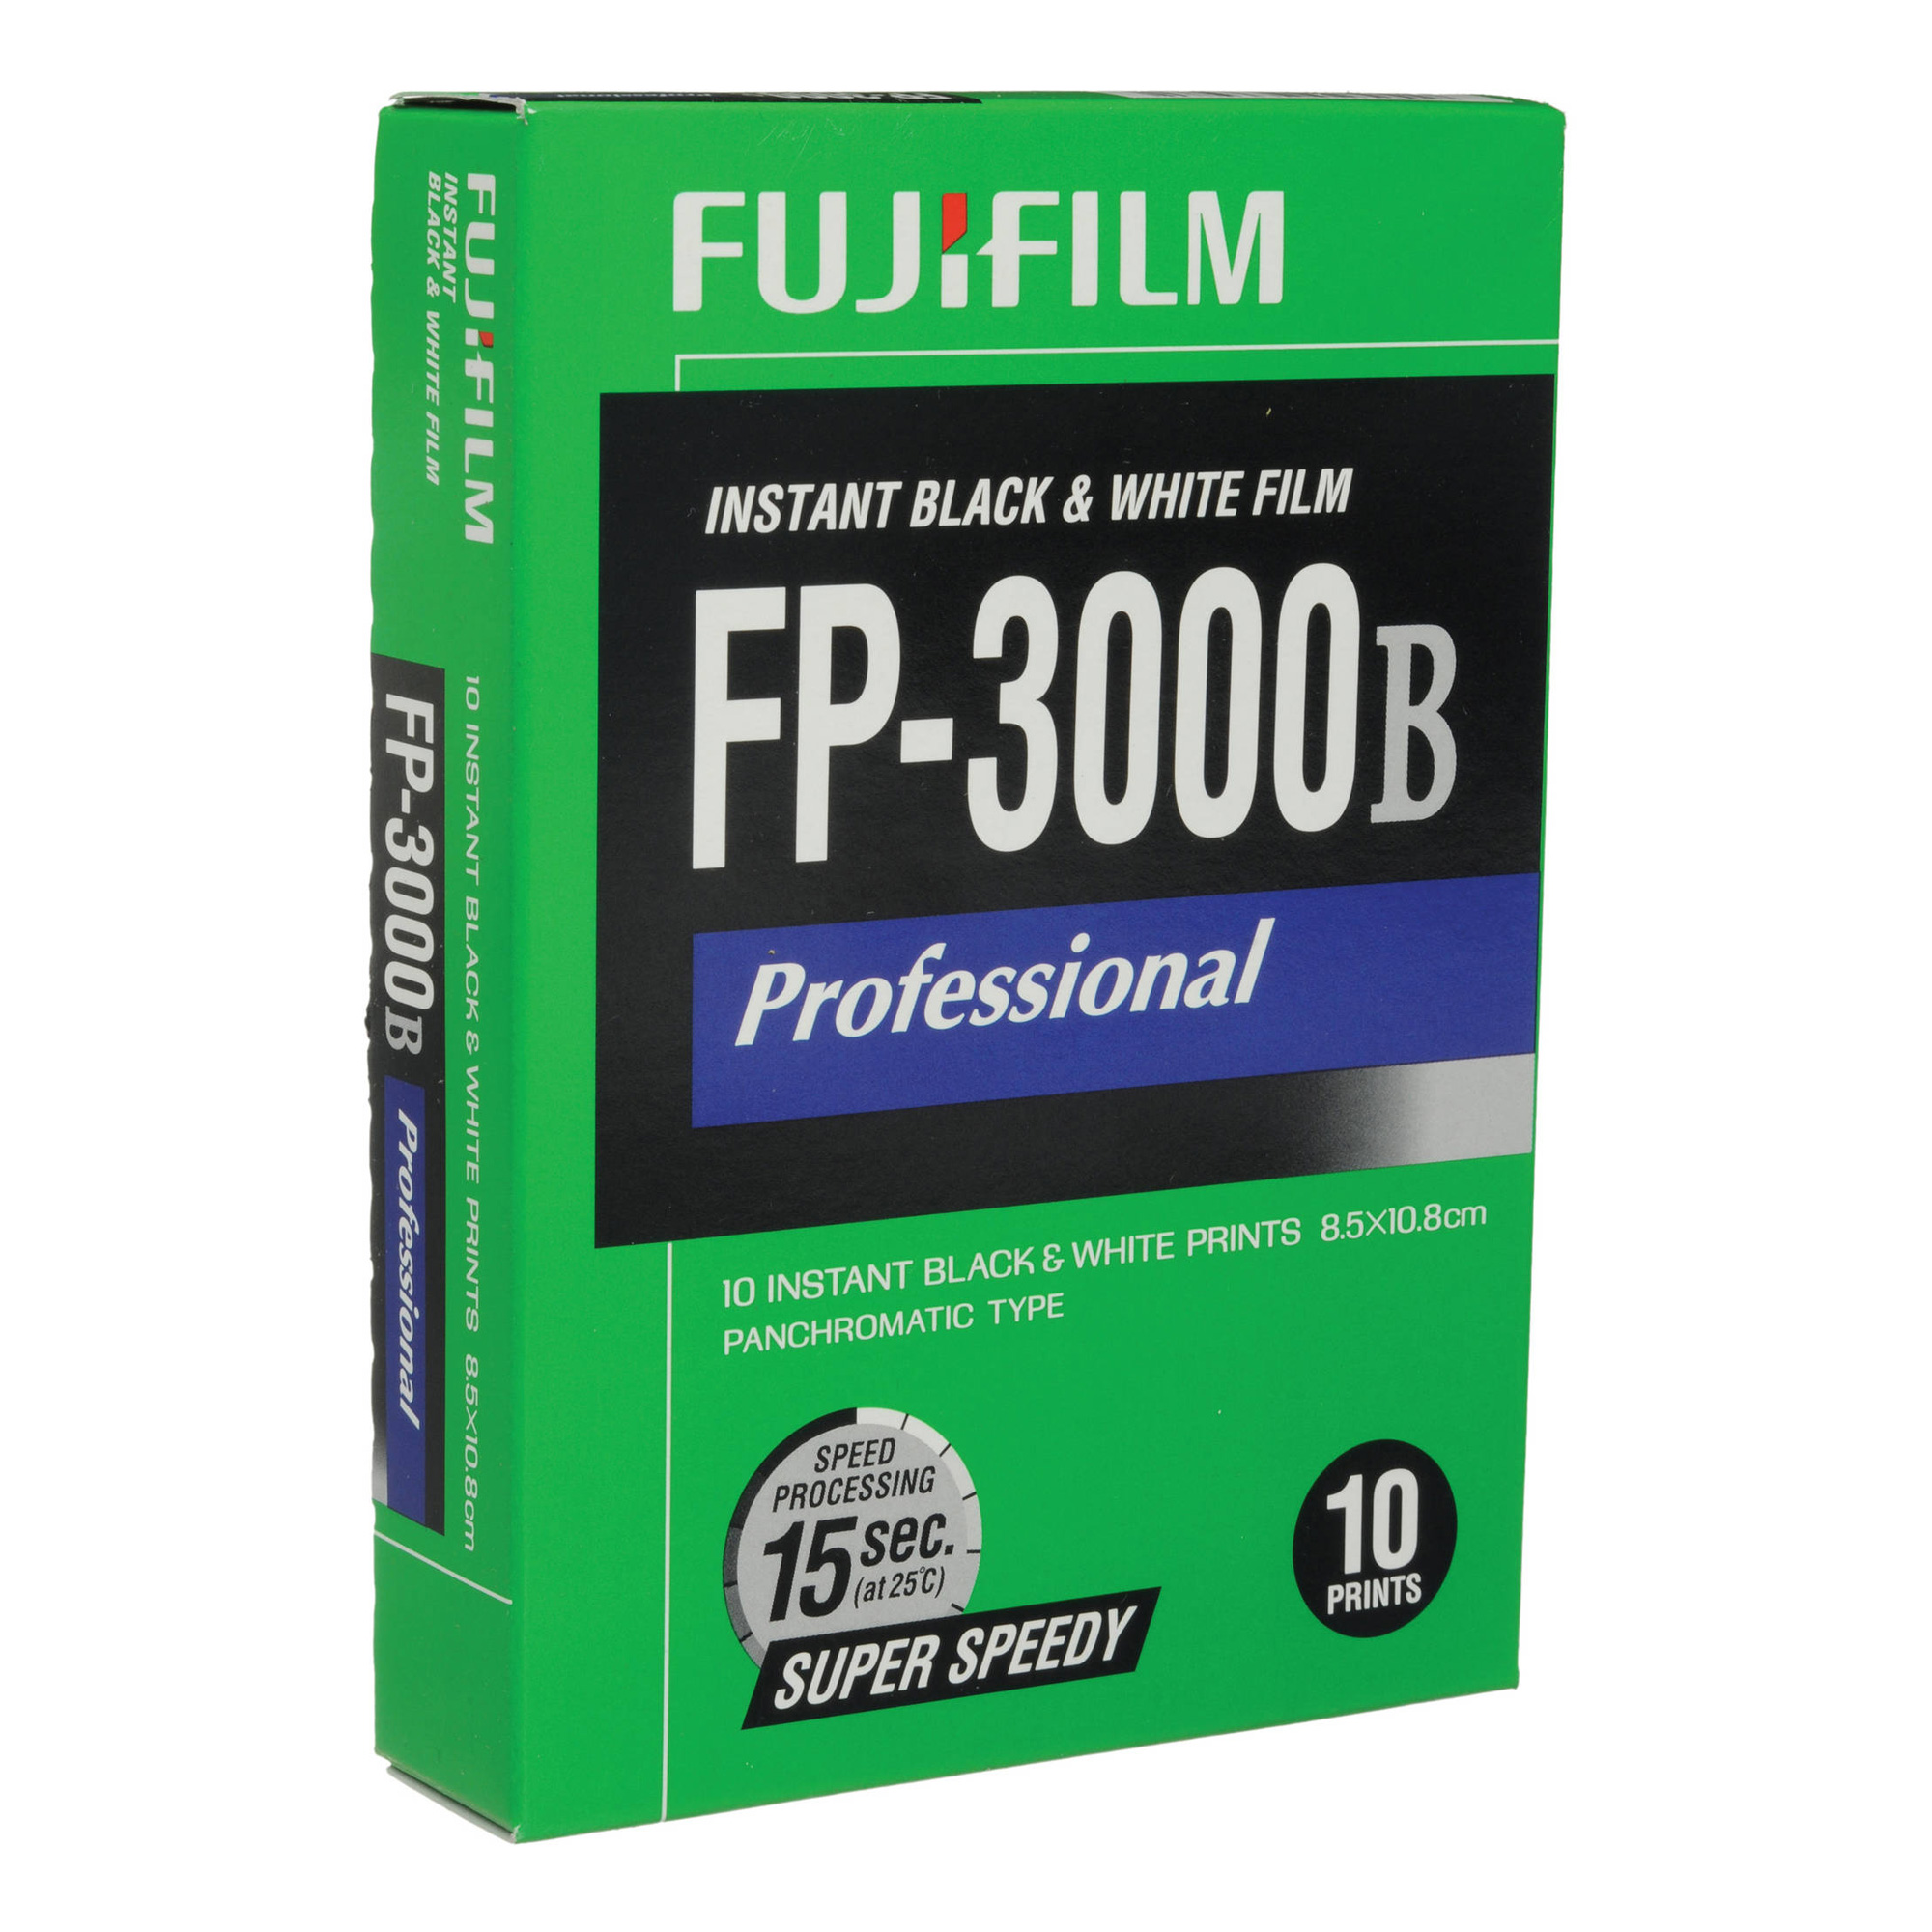 Fuji Fp 3000b Professional Instant Black White Film 10 Exposures